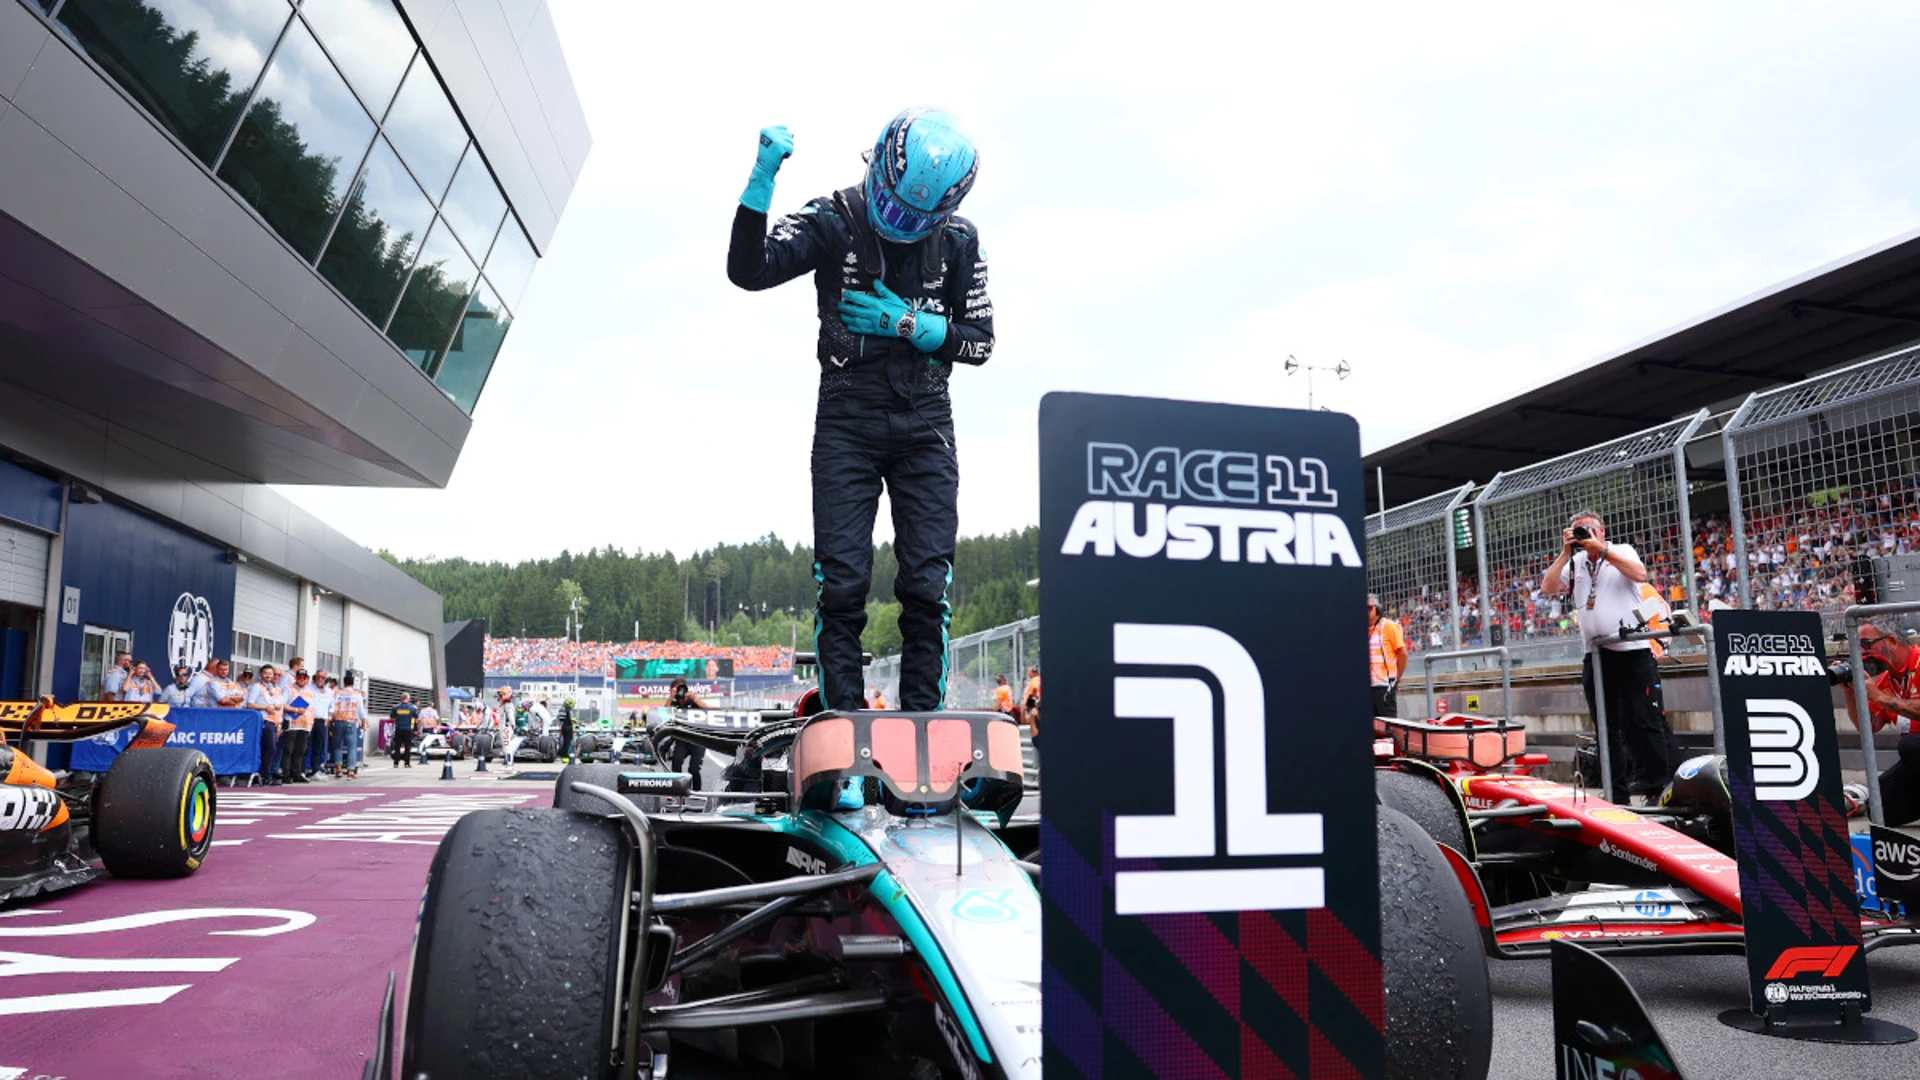 Russell wins Austrian Grand Prix, Verstappen fifth